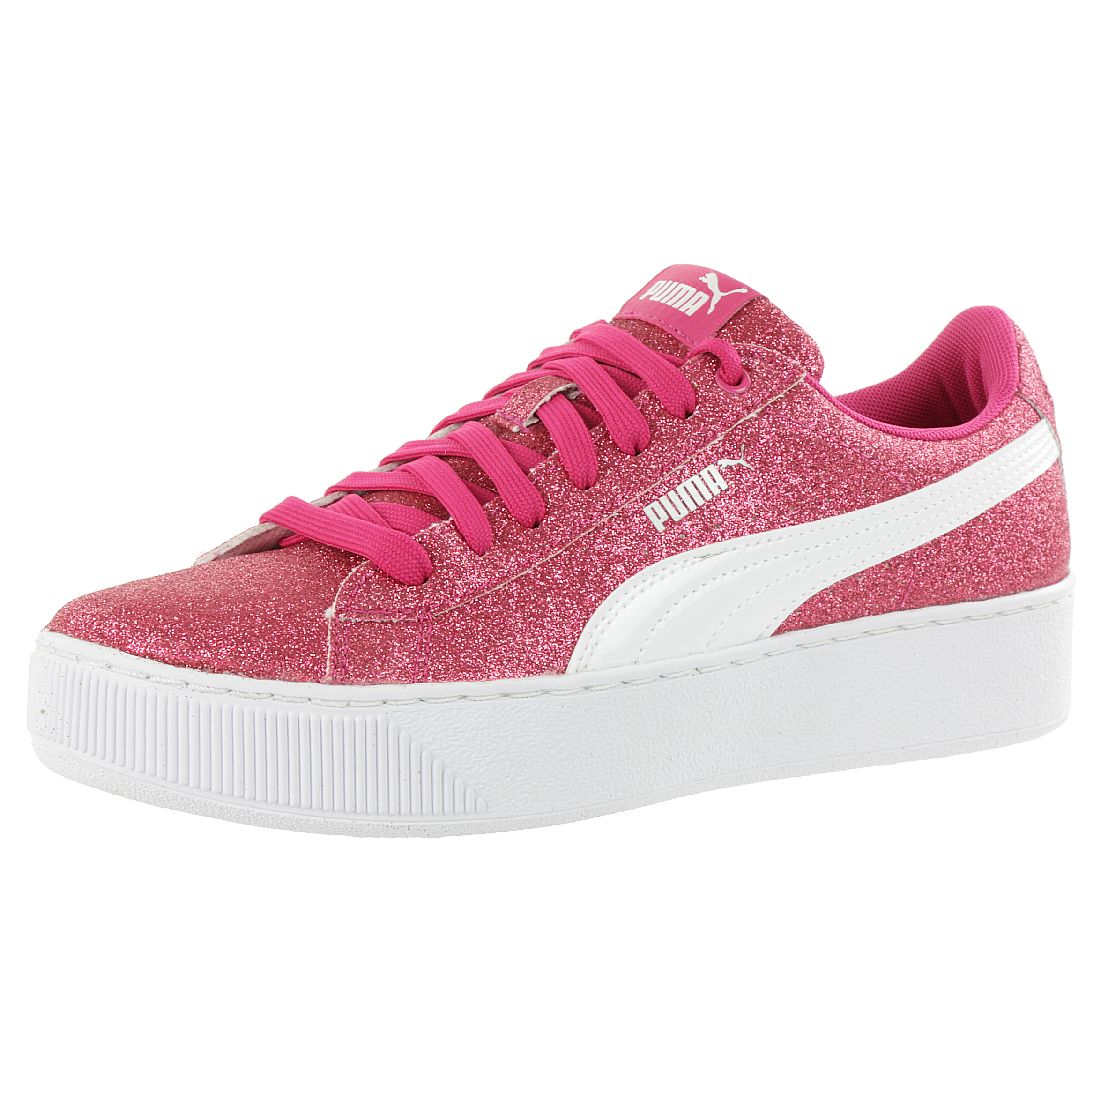 Puma Vikky Platform Glitzer Junior Mädchen Damen Schuh Pink 366856 01